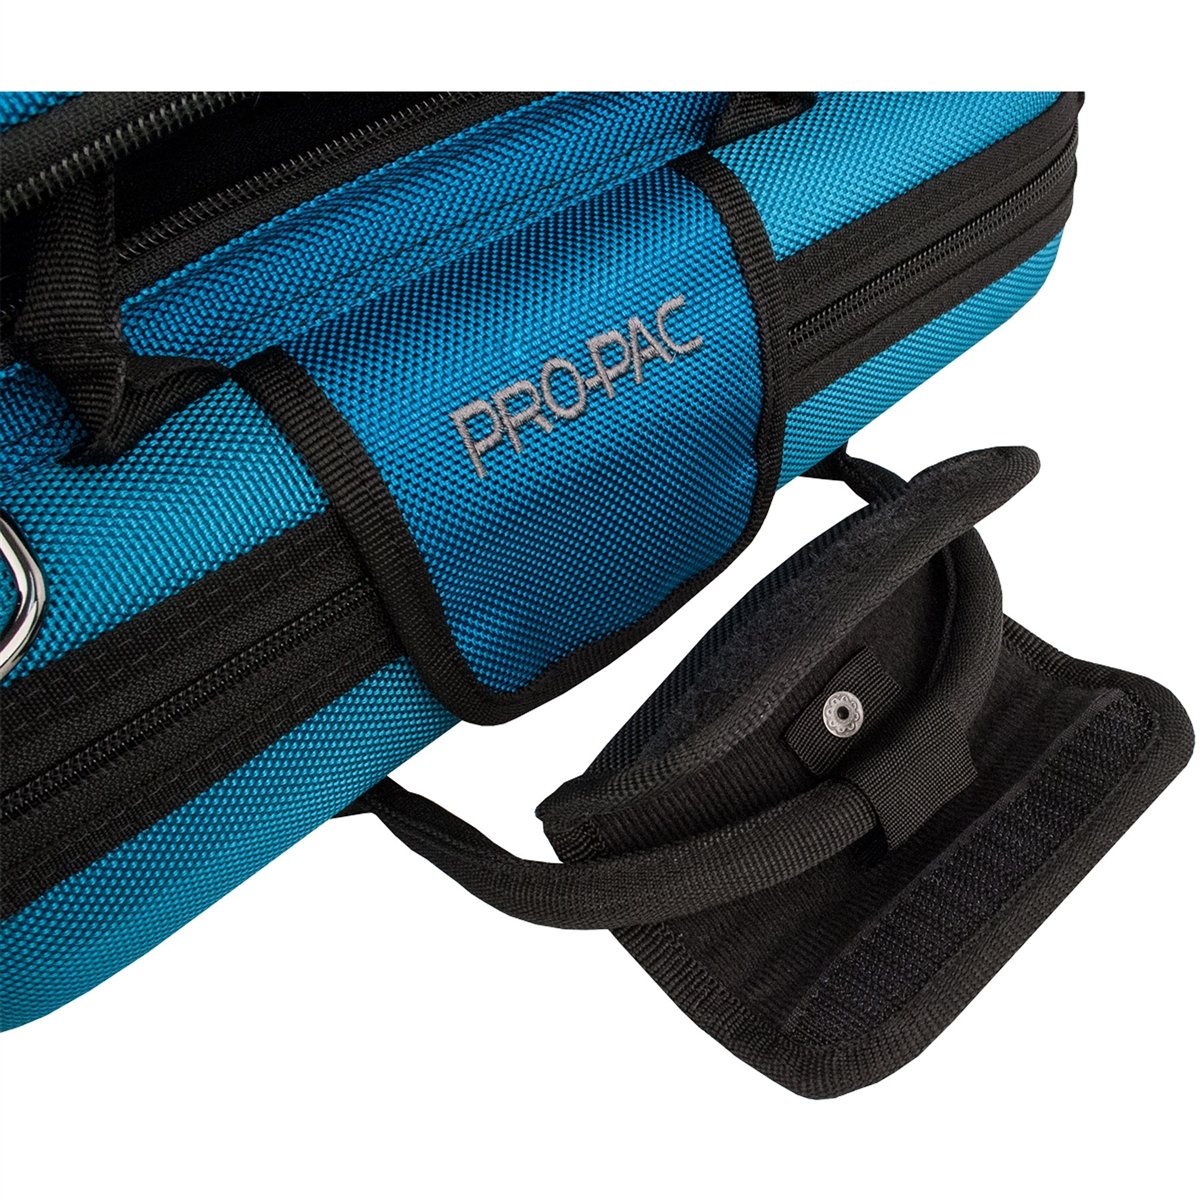 Protec - PRO PAC Case Handle Wrap-Accessories-Protec-Music Elements